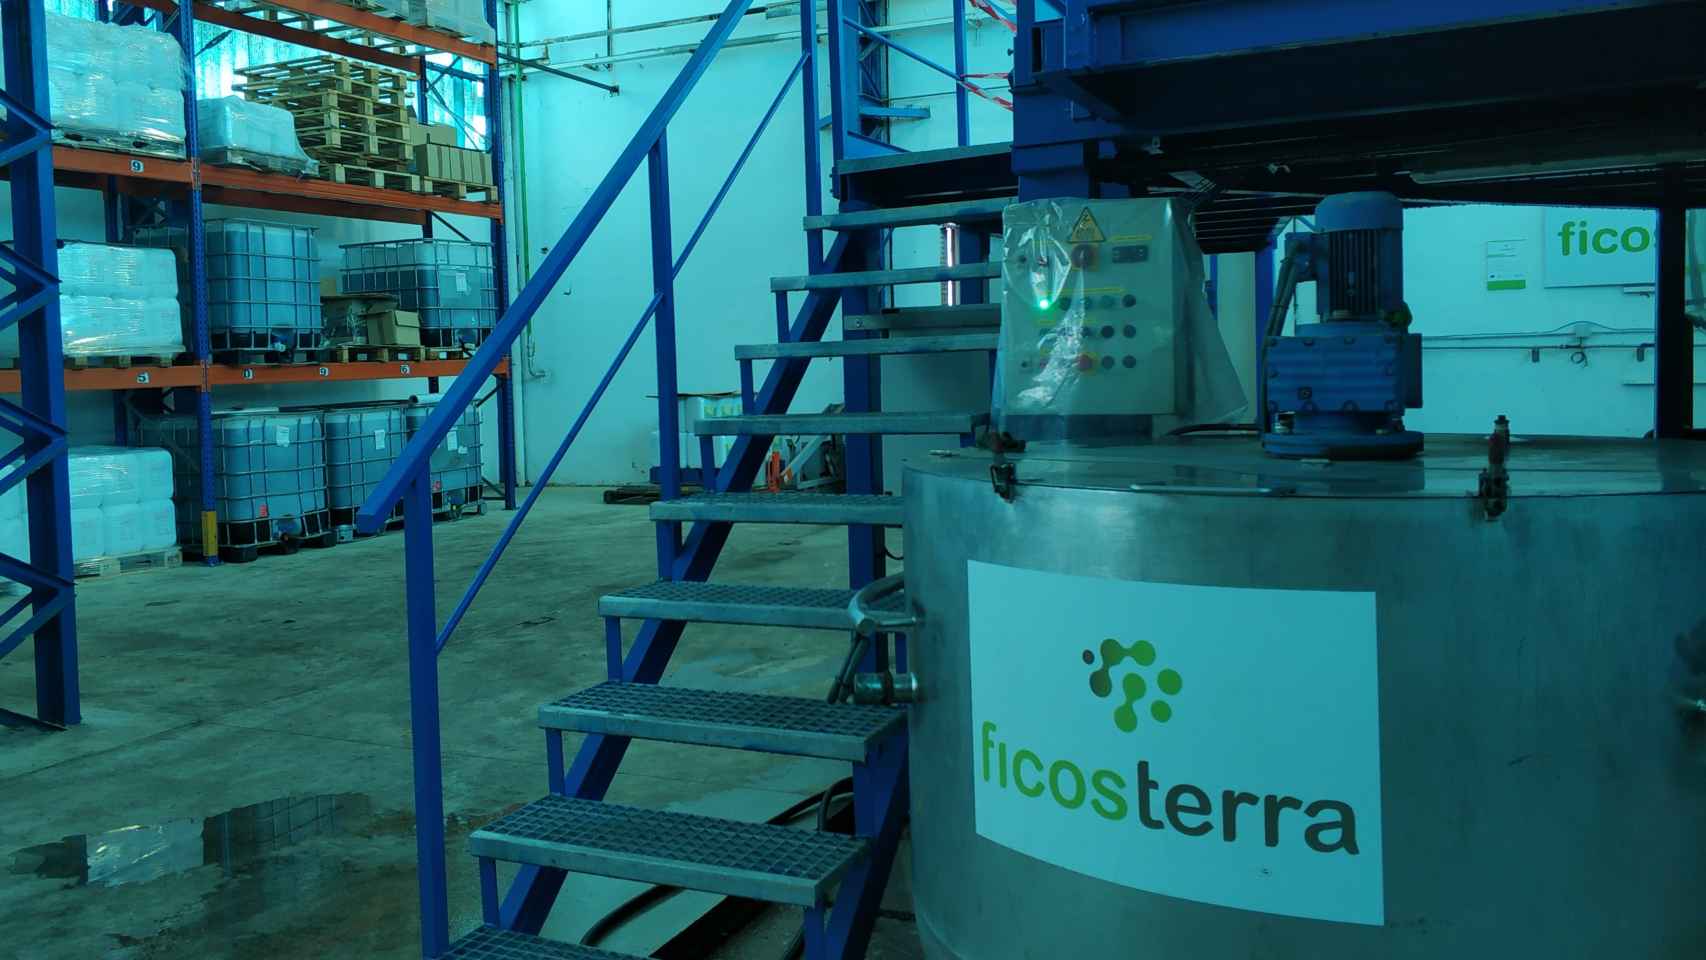 Instalaciones de la empresa Ficosterra con sede en Burgos y en México.